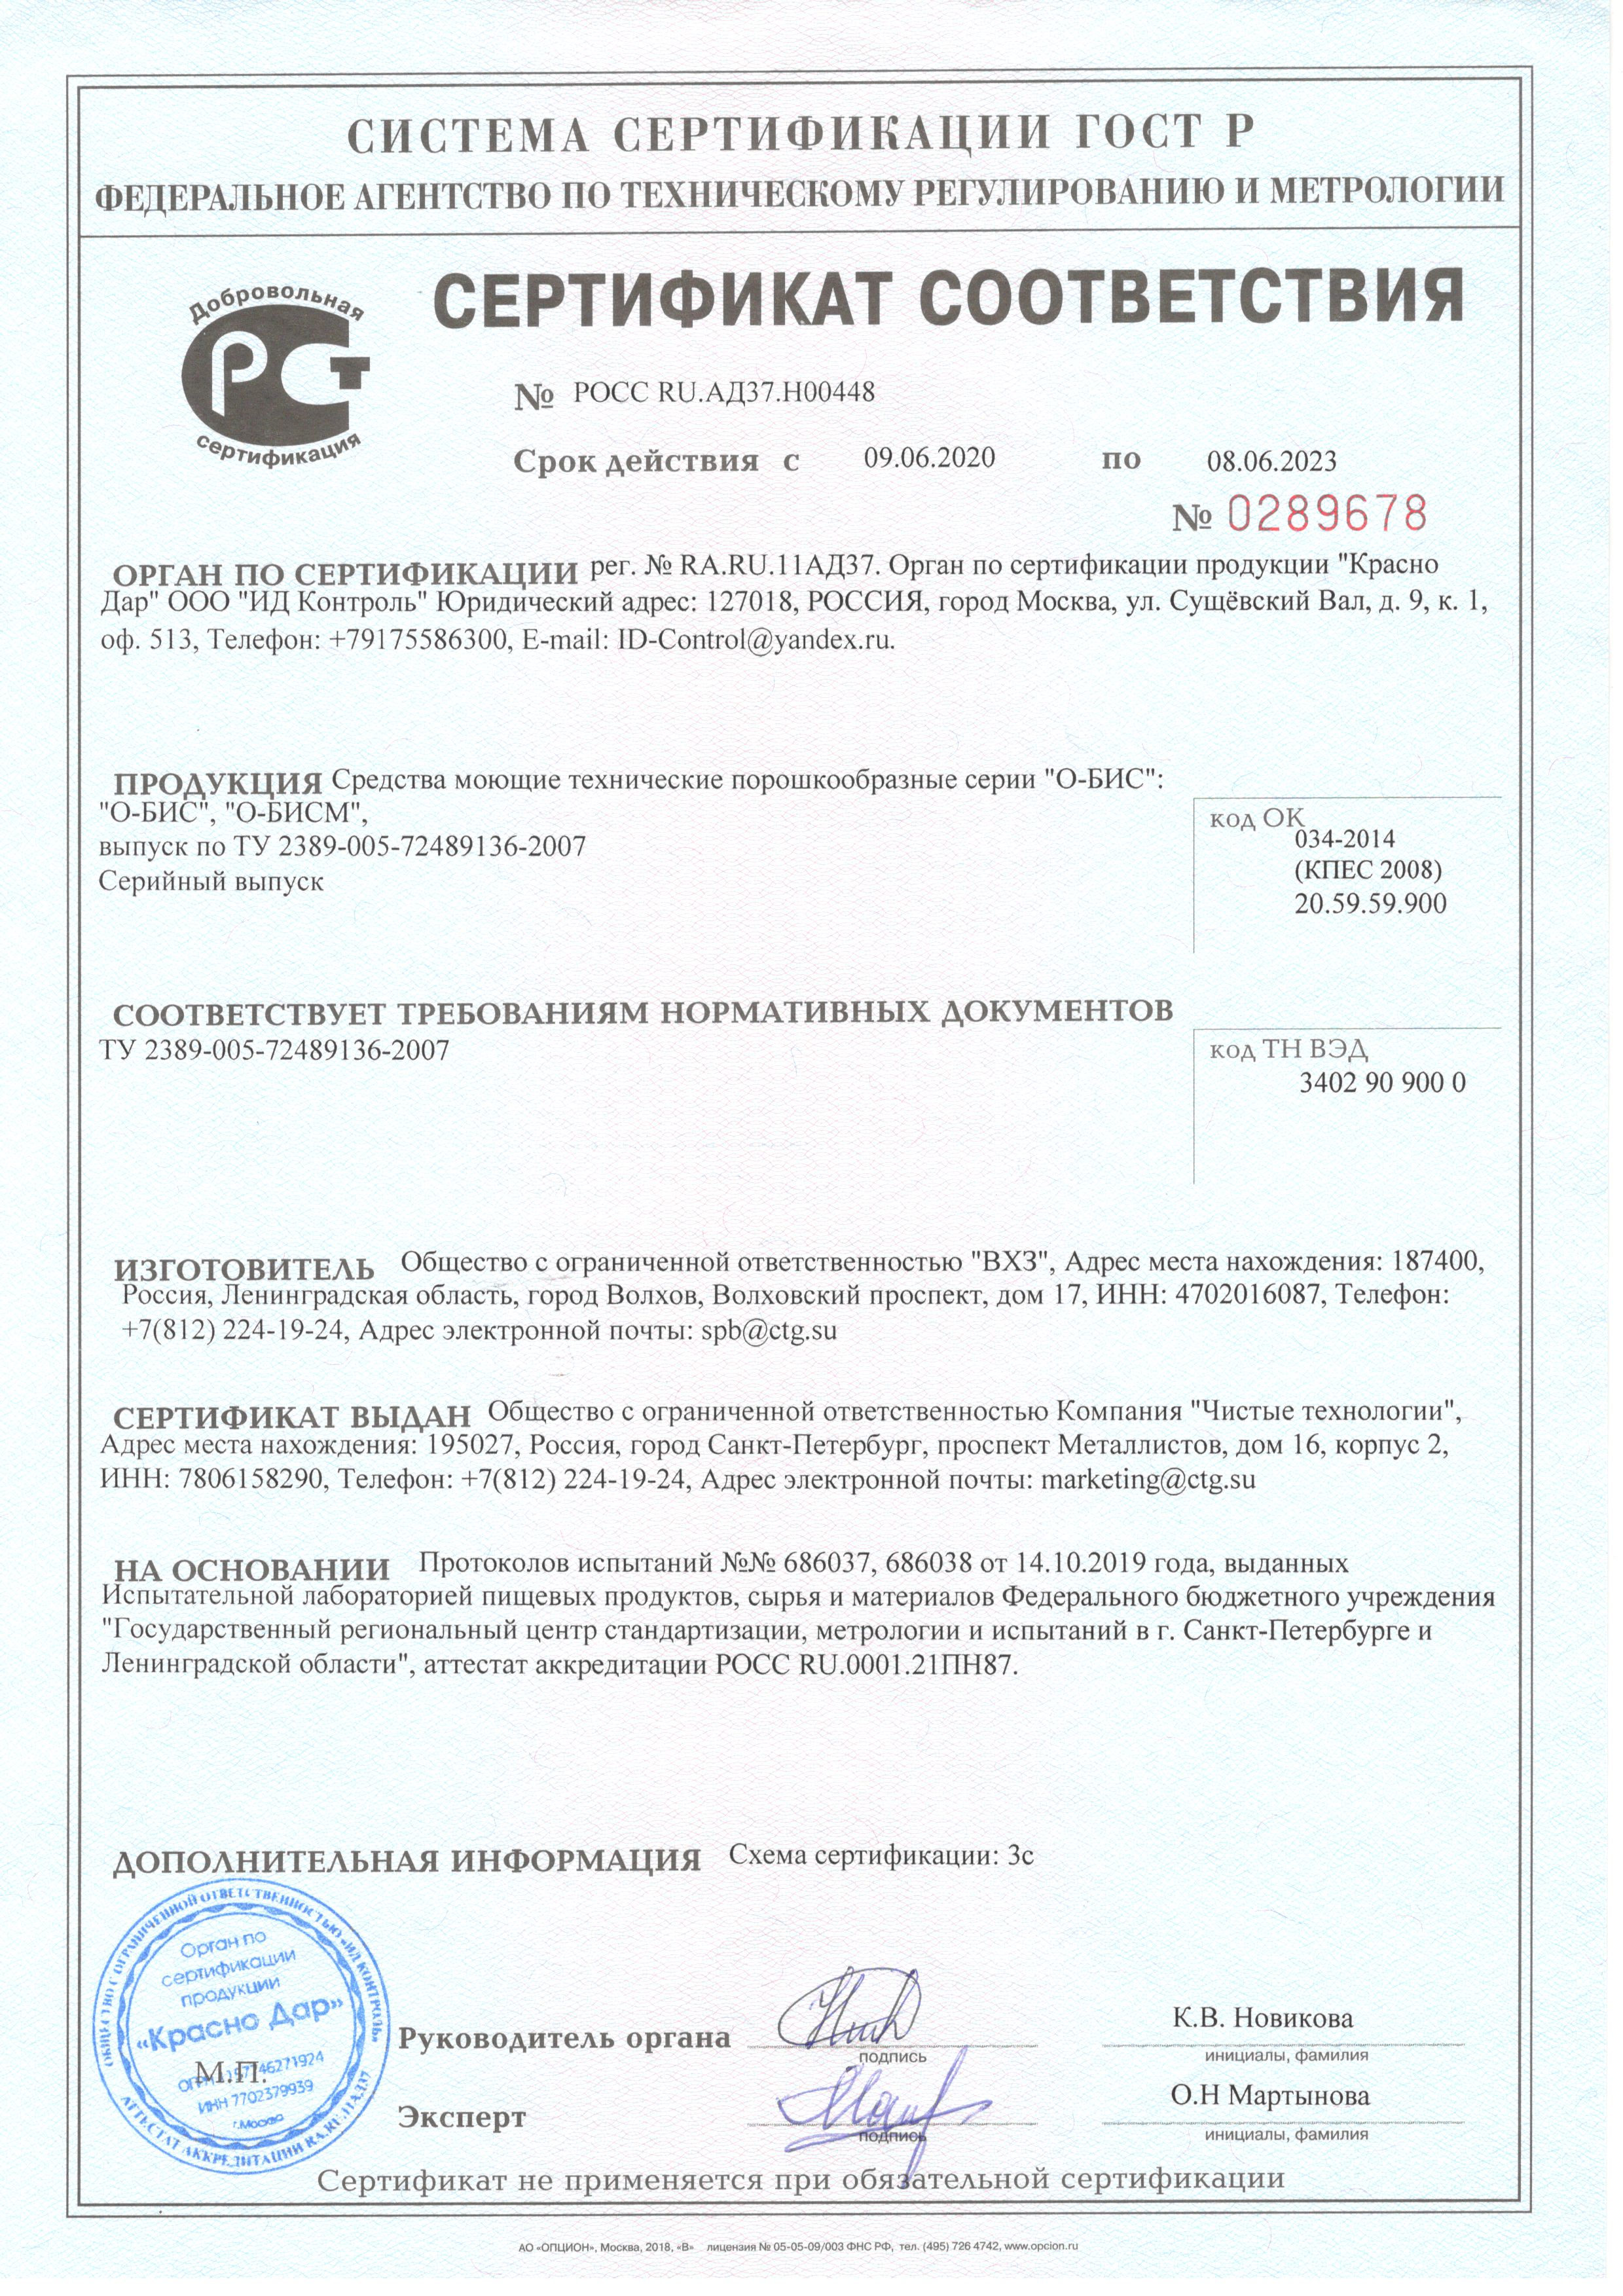 Получен новый сертификат соответствия требованиям нормативных документов